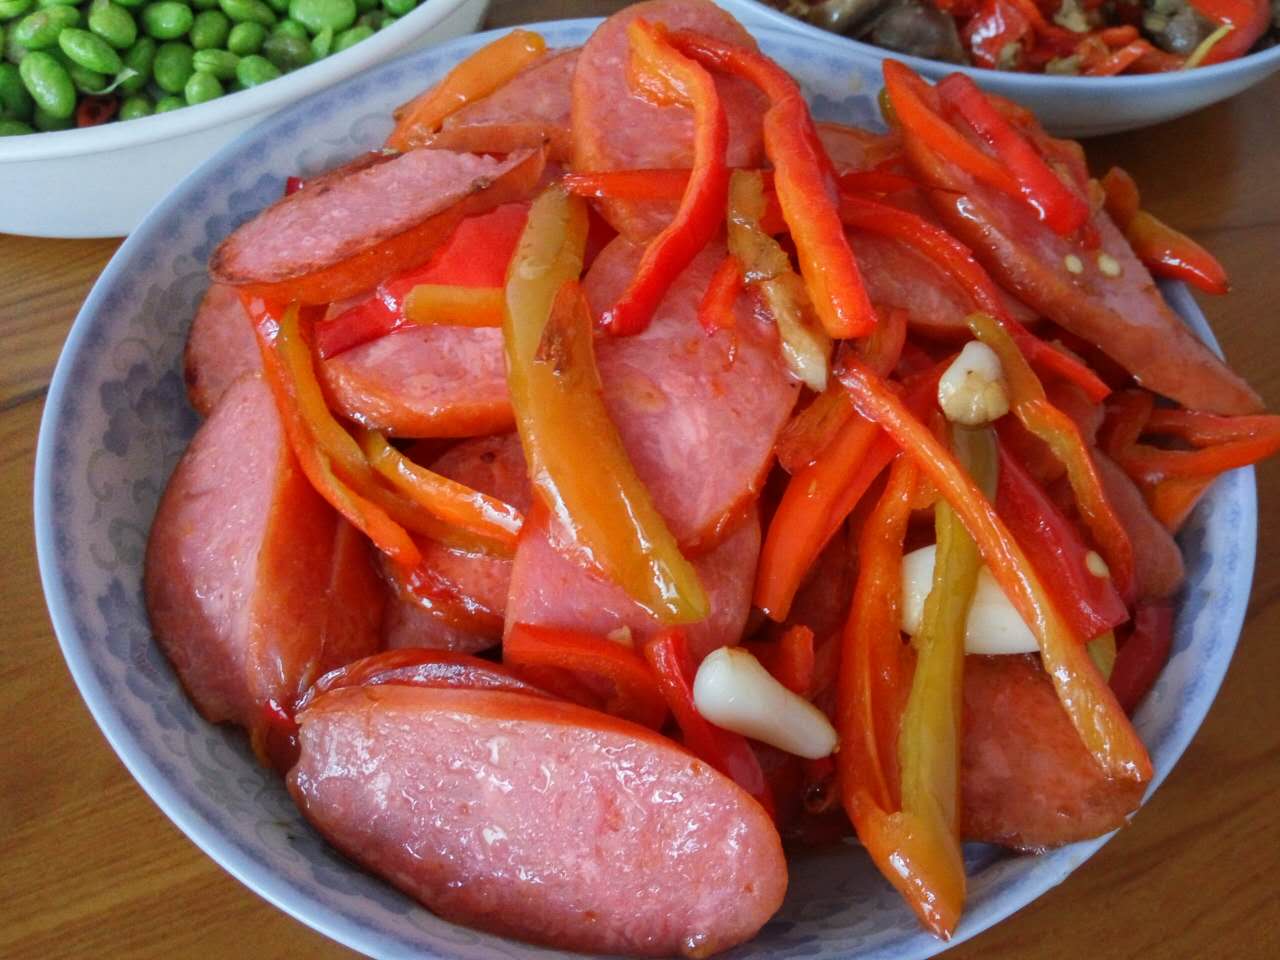 【红椒炒火腿肠】 微微辣的红椒点缀在粉红鲜香的火腿肠之间,浑然一体